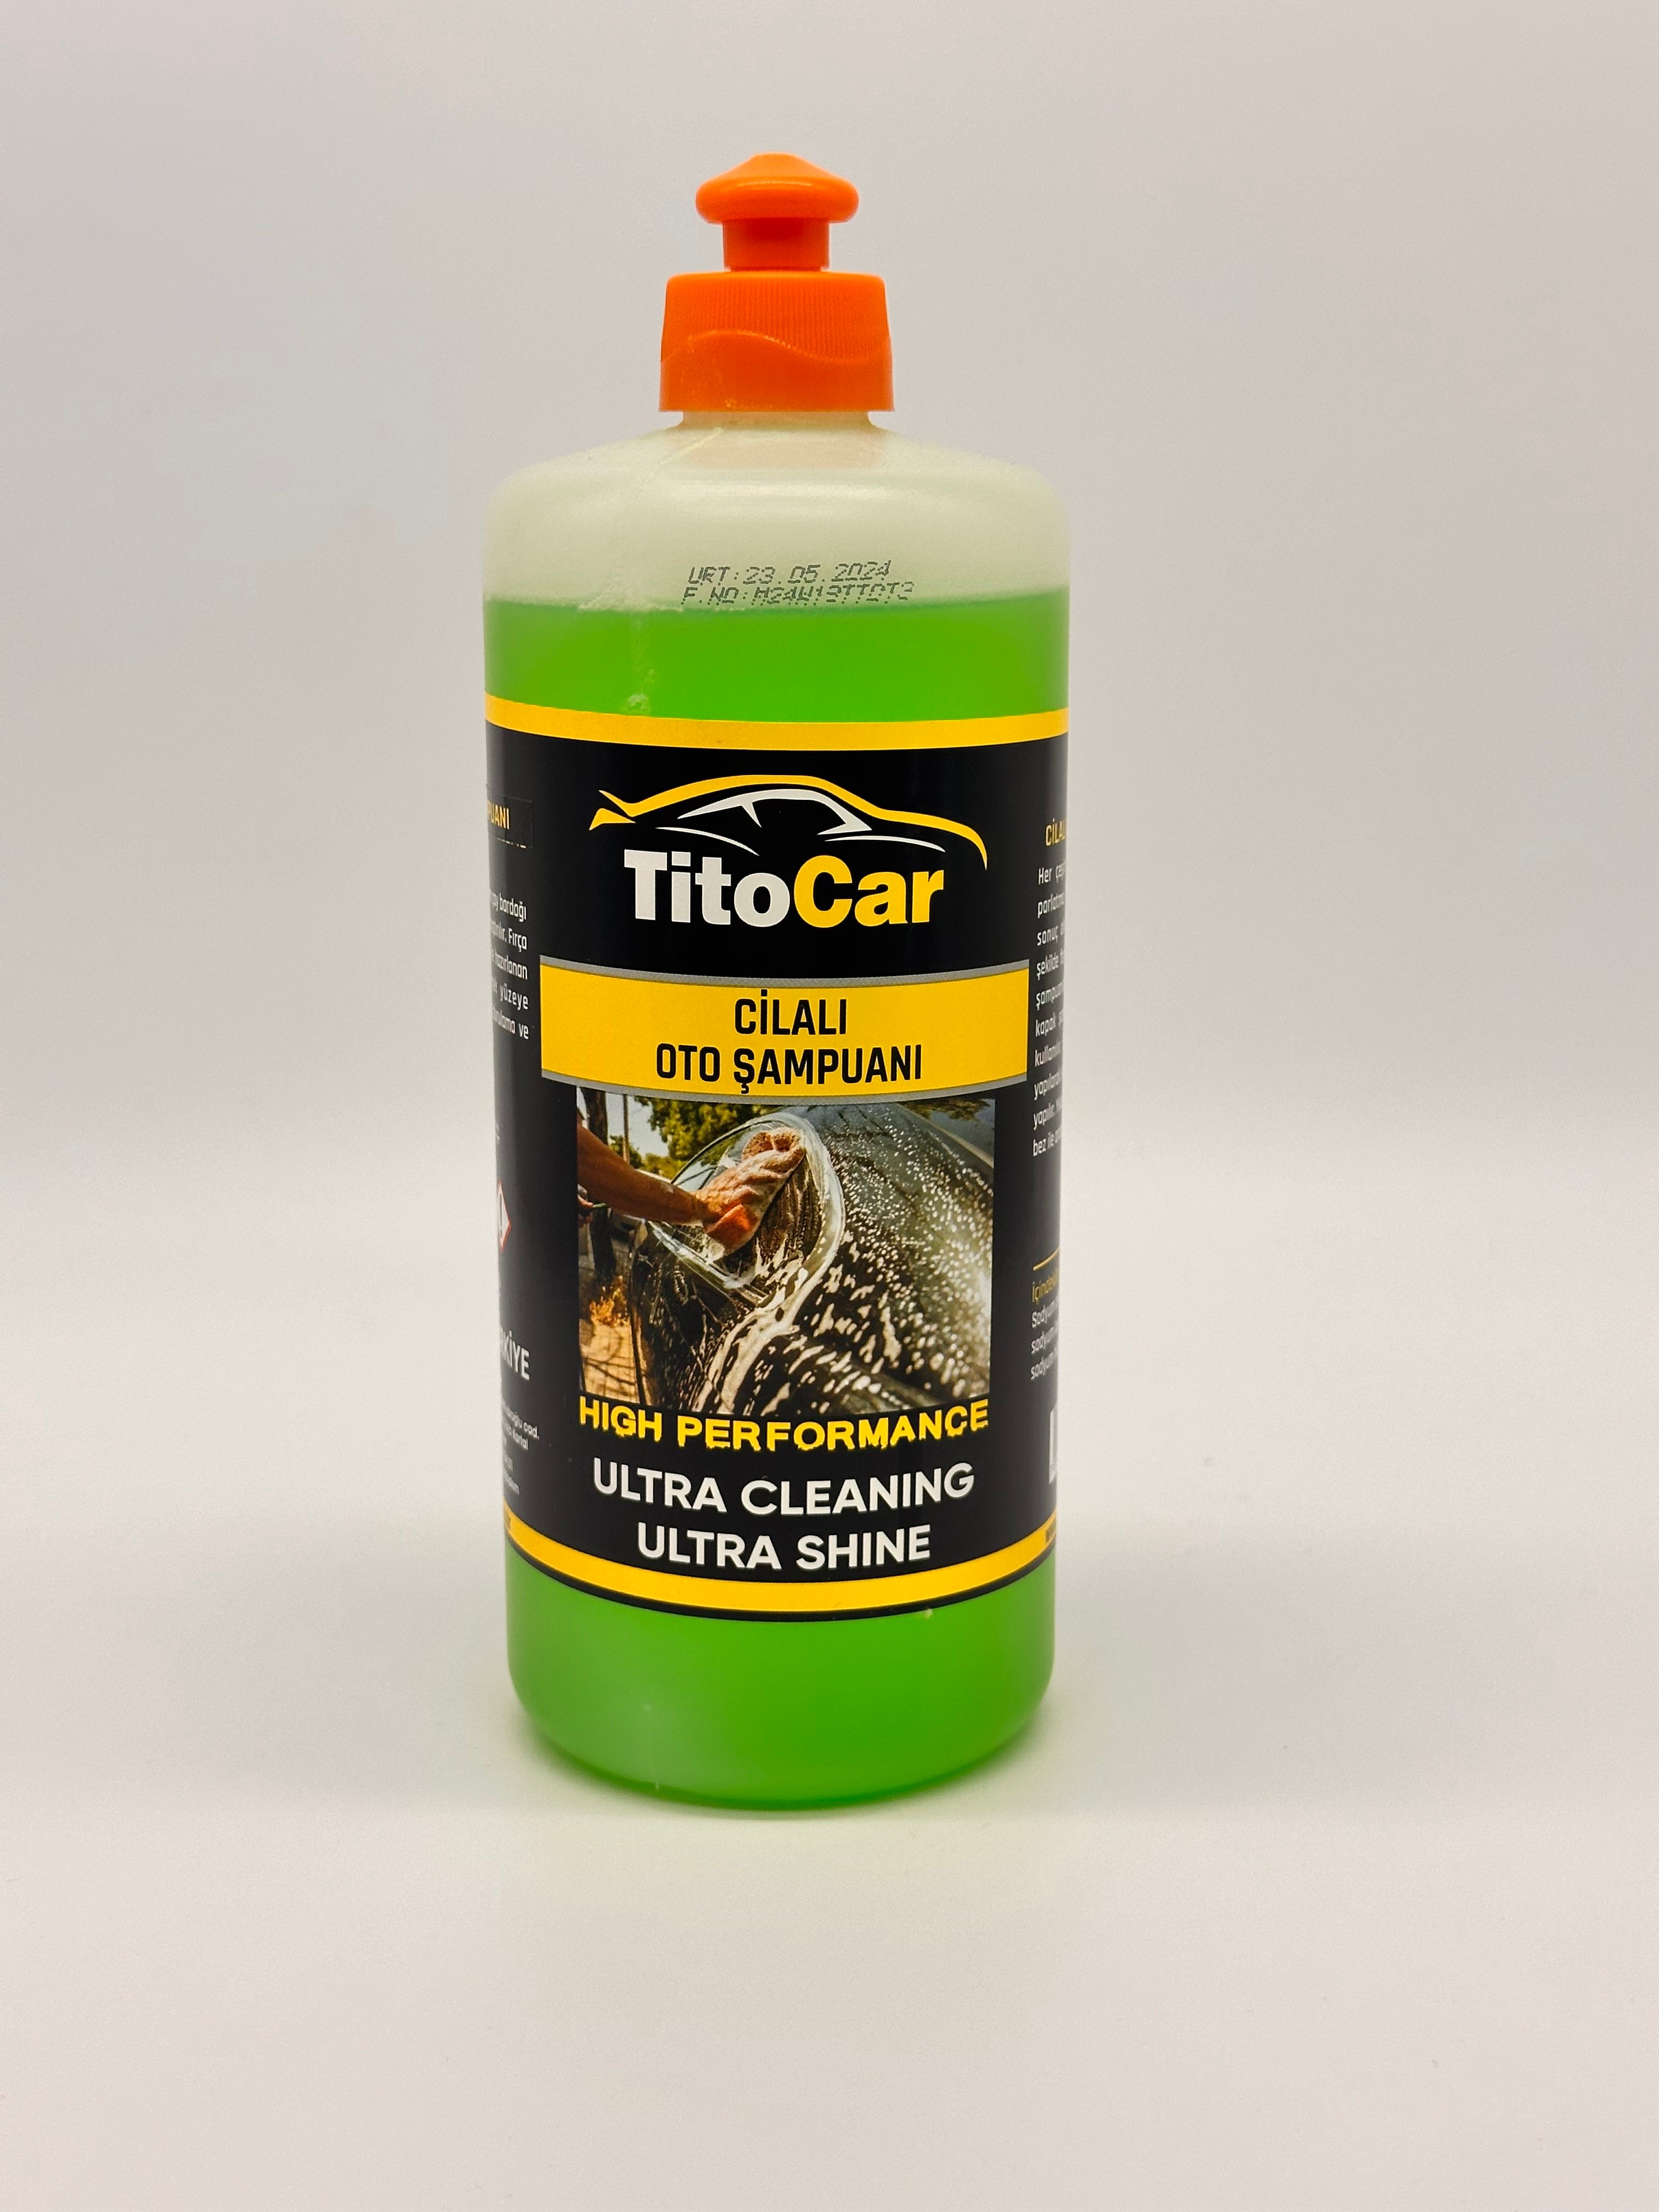 TitoCar Cilalı Oto Şampuan 750 ml